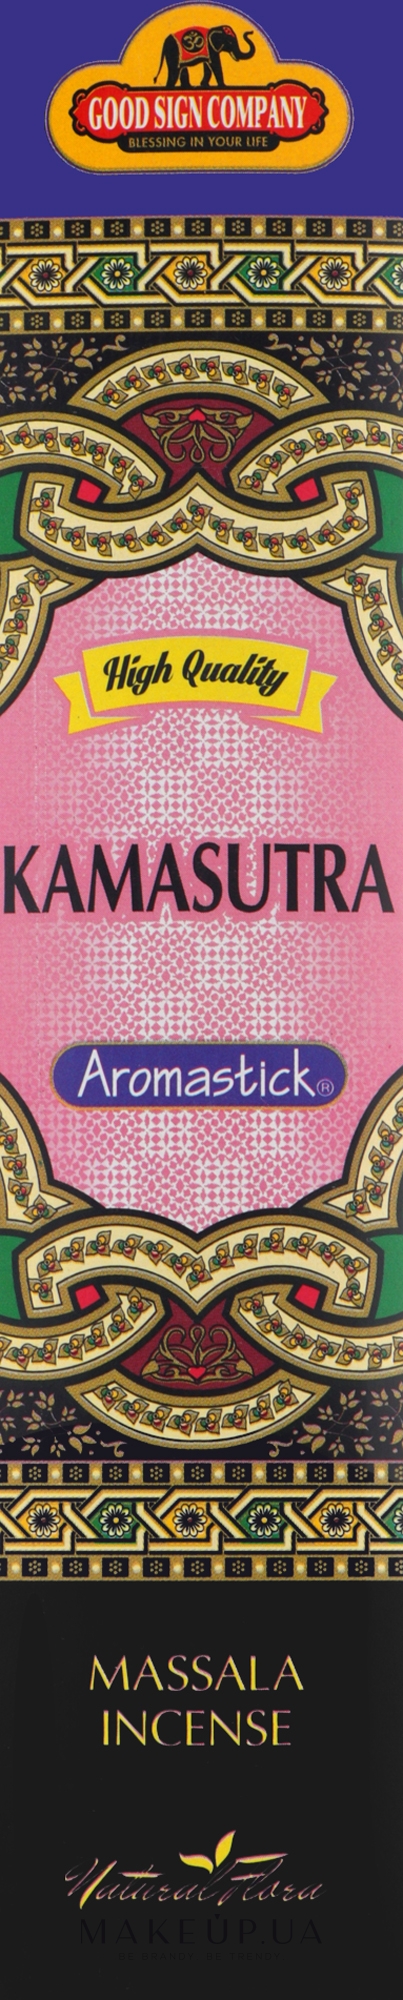 Ароматичні палички "Камасутра" - Good Sign Company Kamasutra Aromastick — фото 7шт